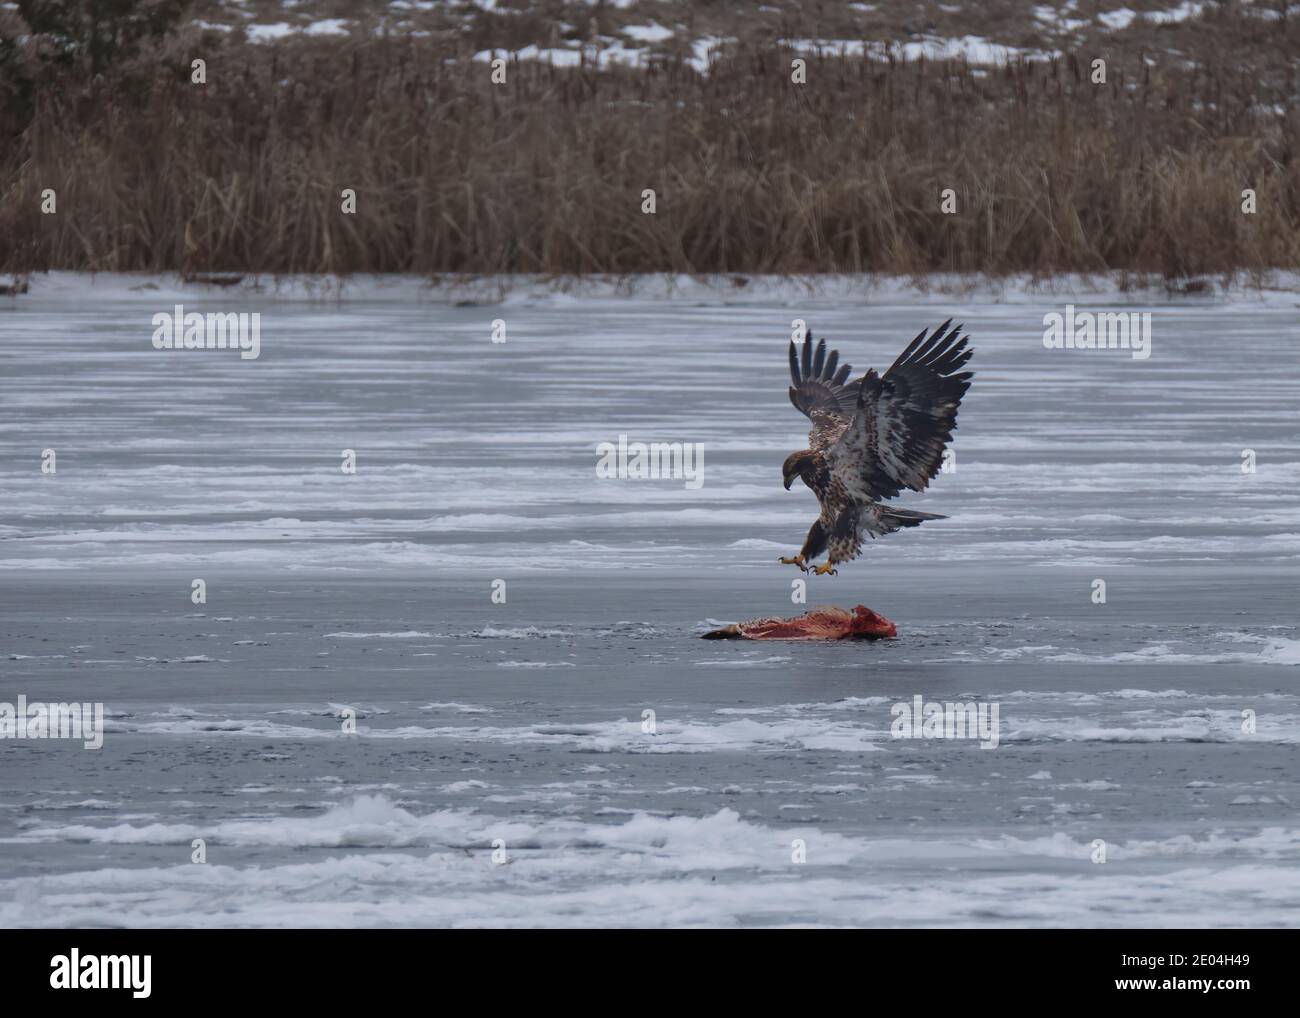 Un jeune aigle à tête blanche atterrit avec ses ailes étirées au-dessus d'un gros poisson mort sur une rivière gelée. Banque D'Images